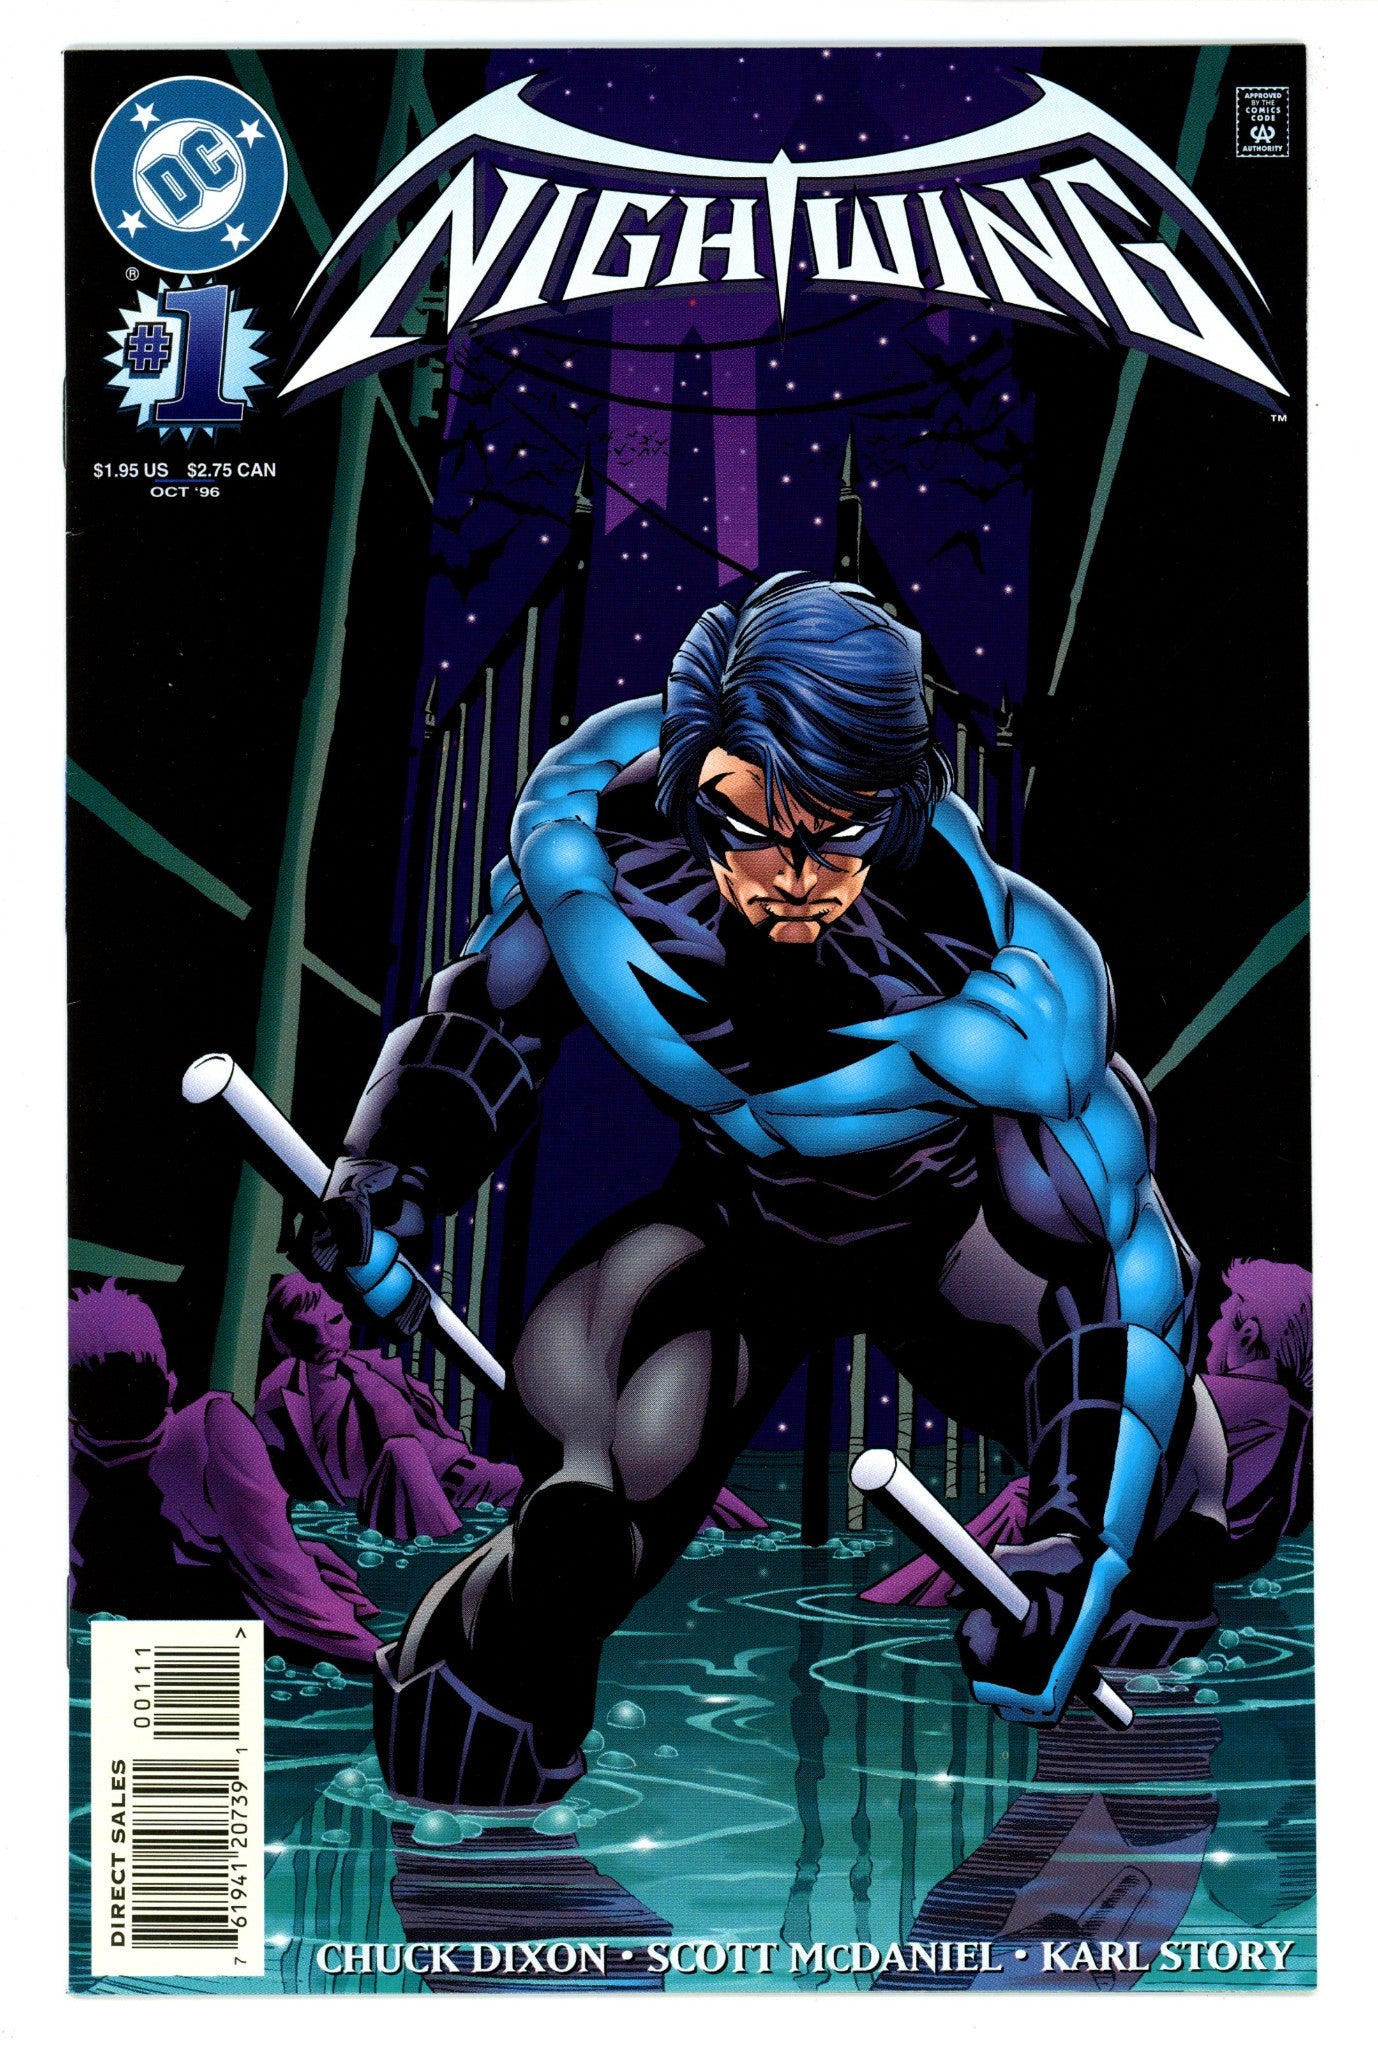 Nightwing Vol 2 1 VF (8.0) (1996) 